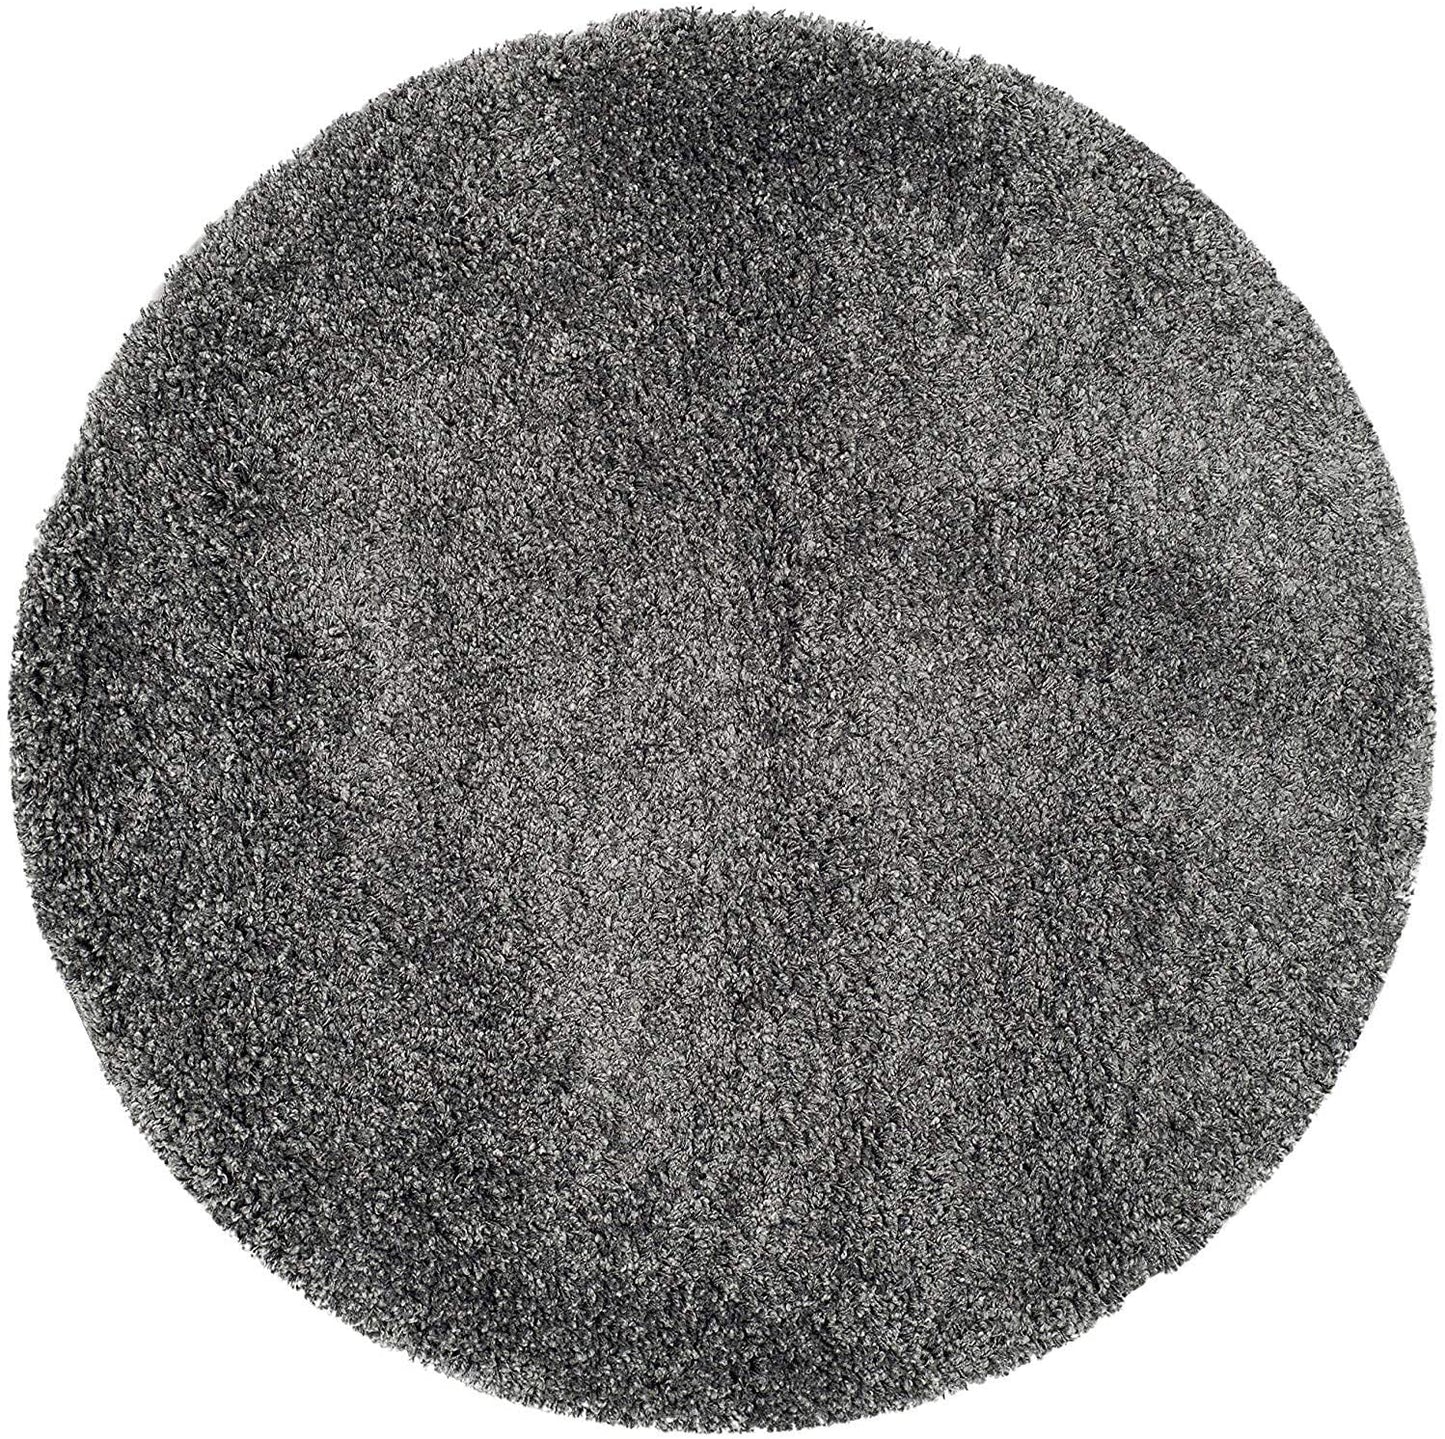 Dark Grey Solid Shaggy Area Rug - Ladolerugsca